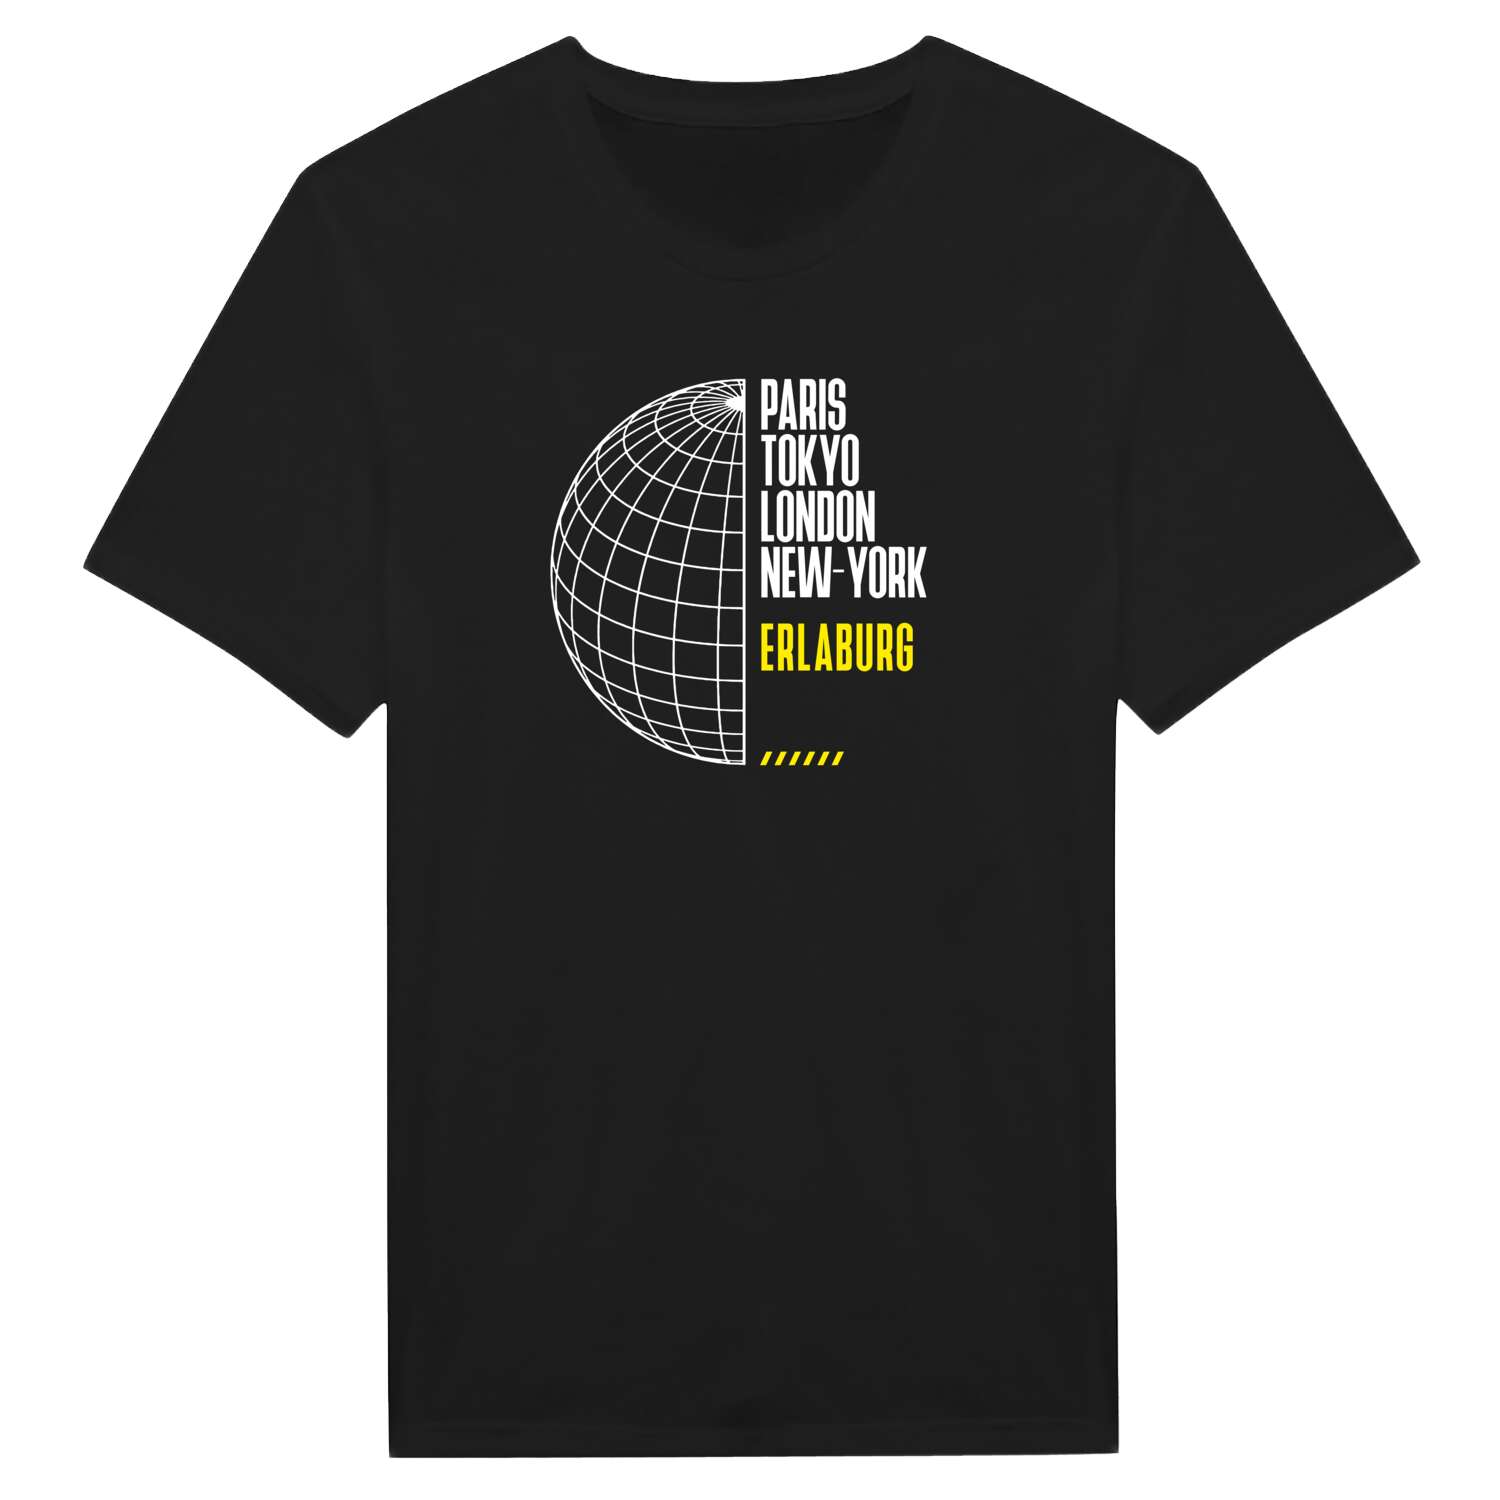 Erlaburg T-Shirt »Paris Tokyo London«